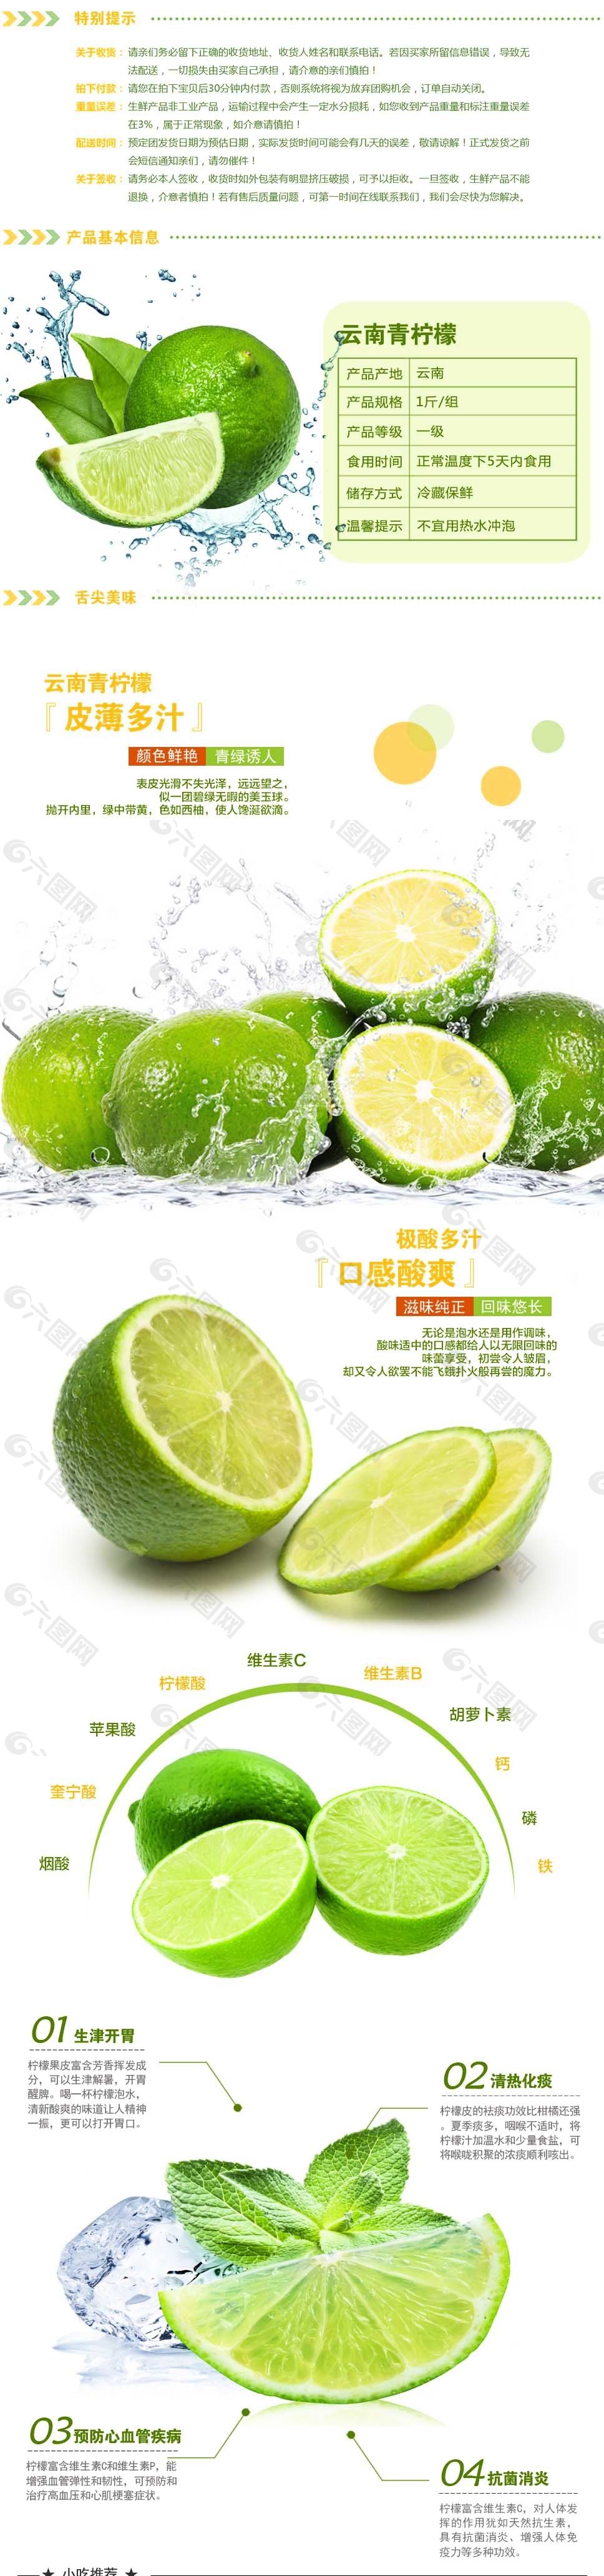 淘宝水果柠檬详情页